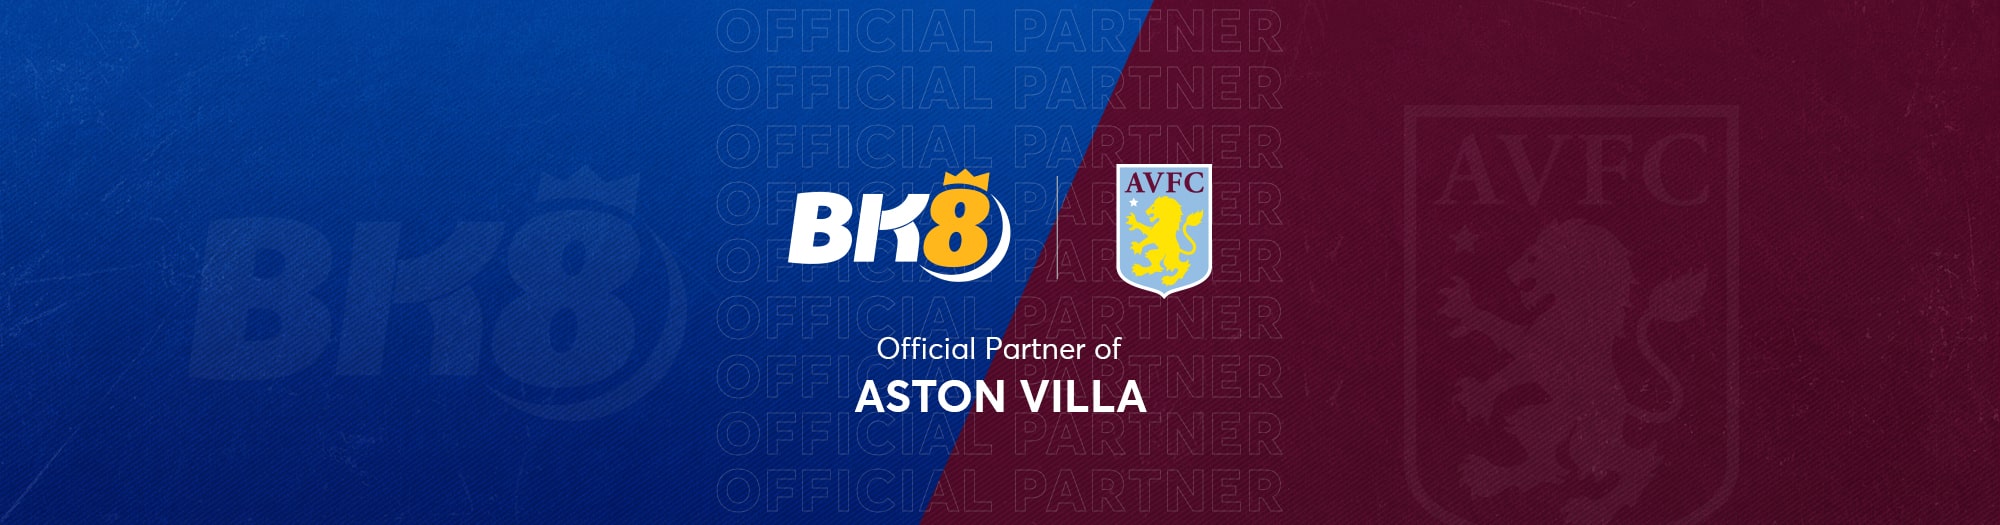 BK8-Official-Partner-Aston-Villa